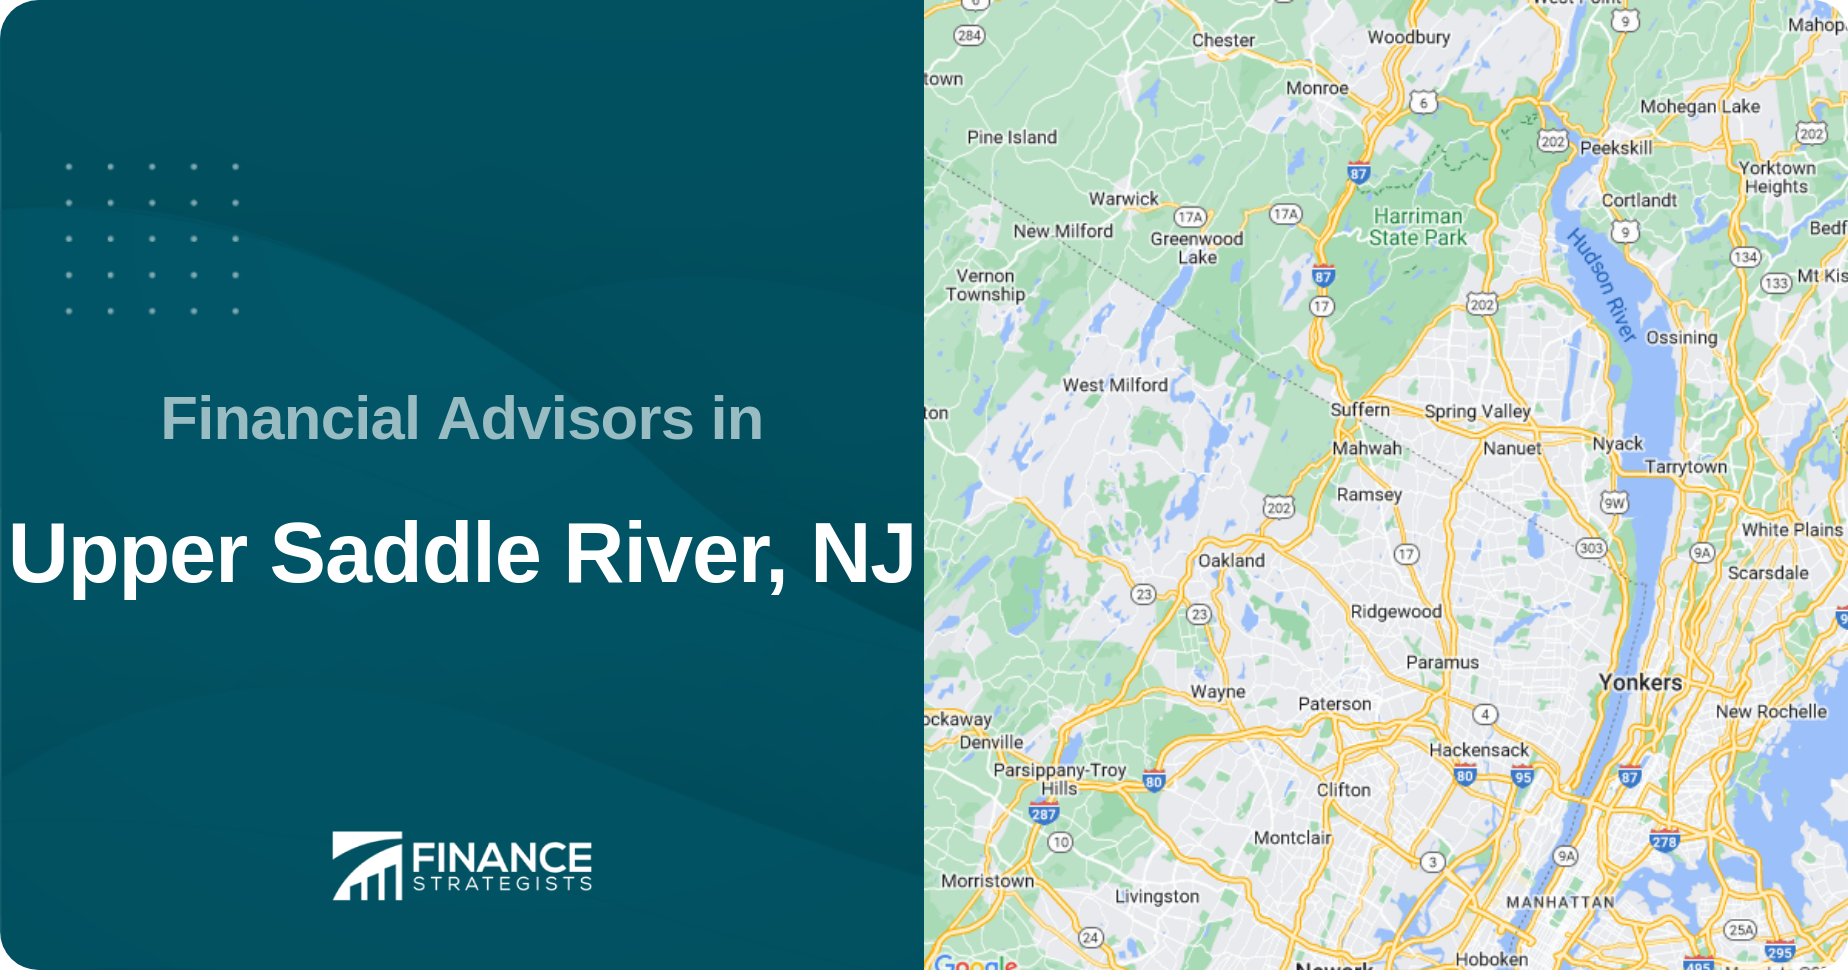 Financial Advisors in Upper Saddle River, NJ